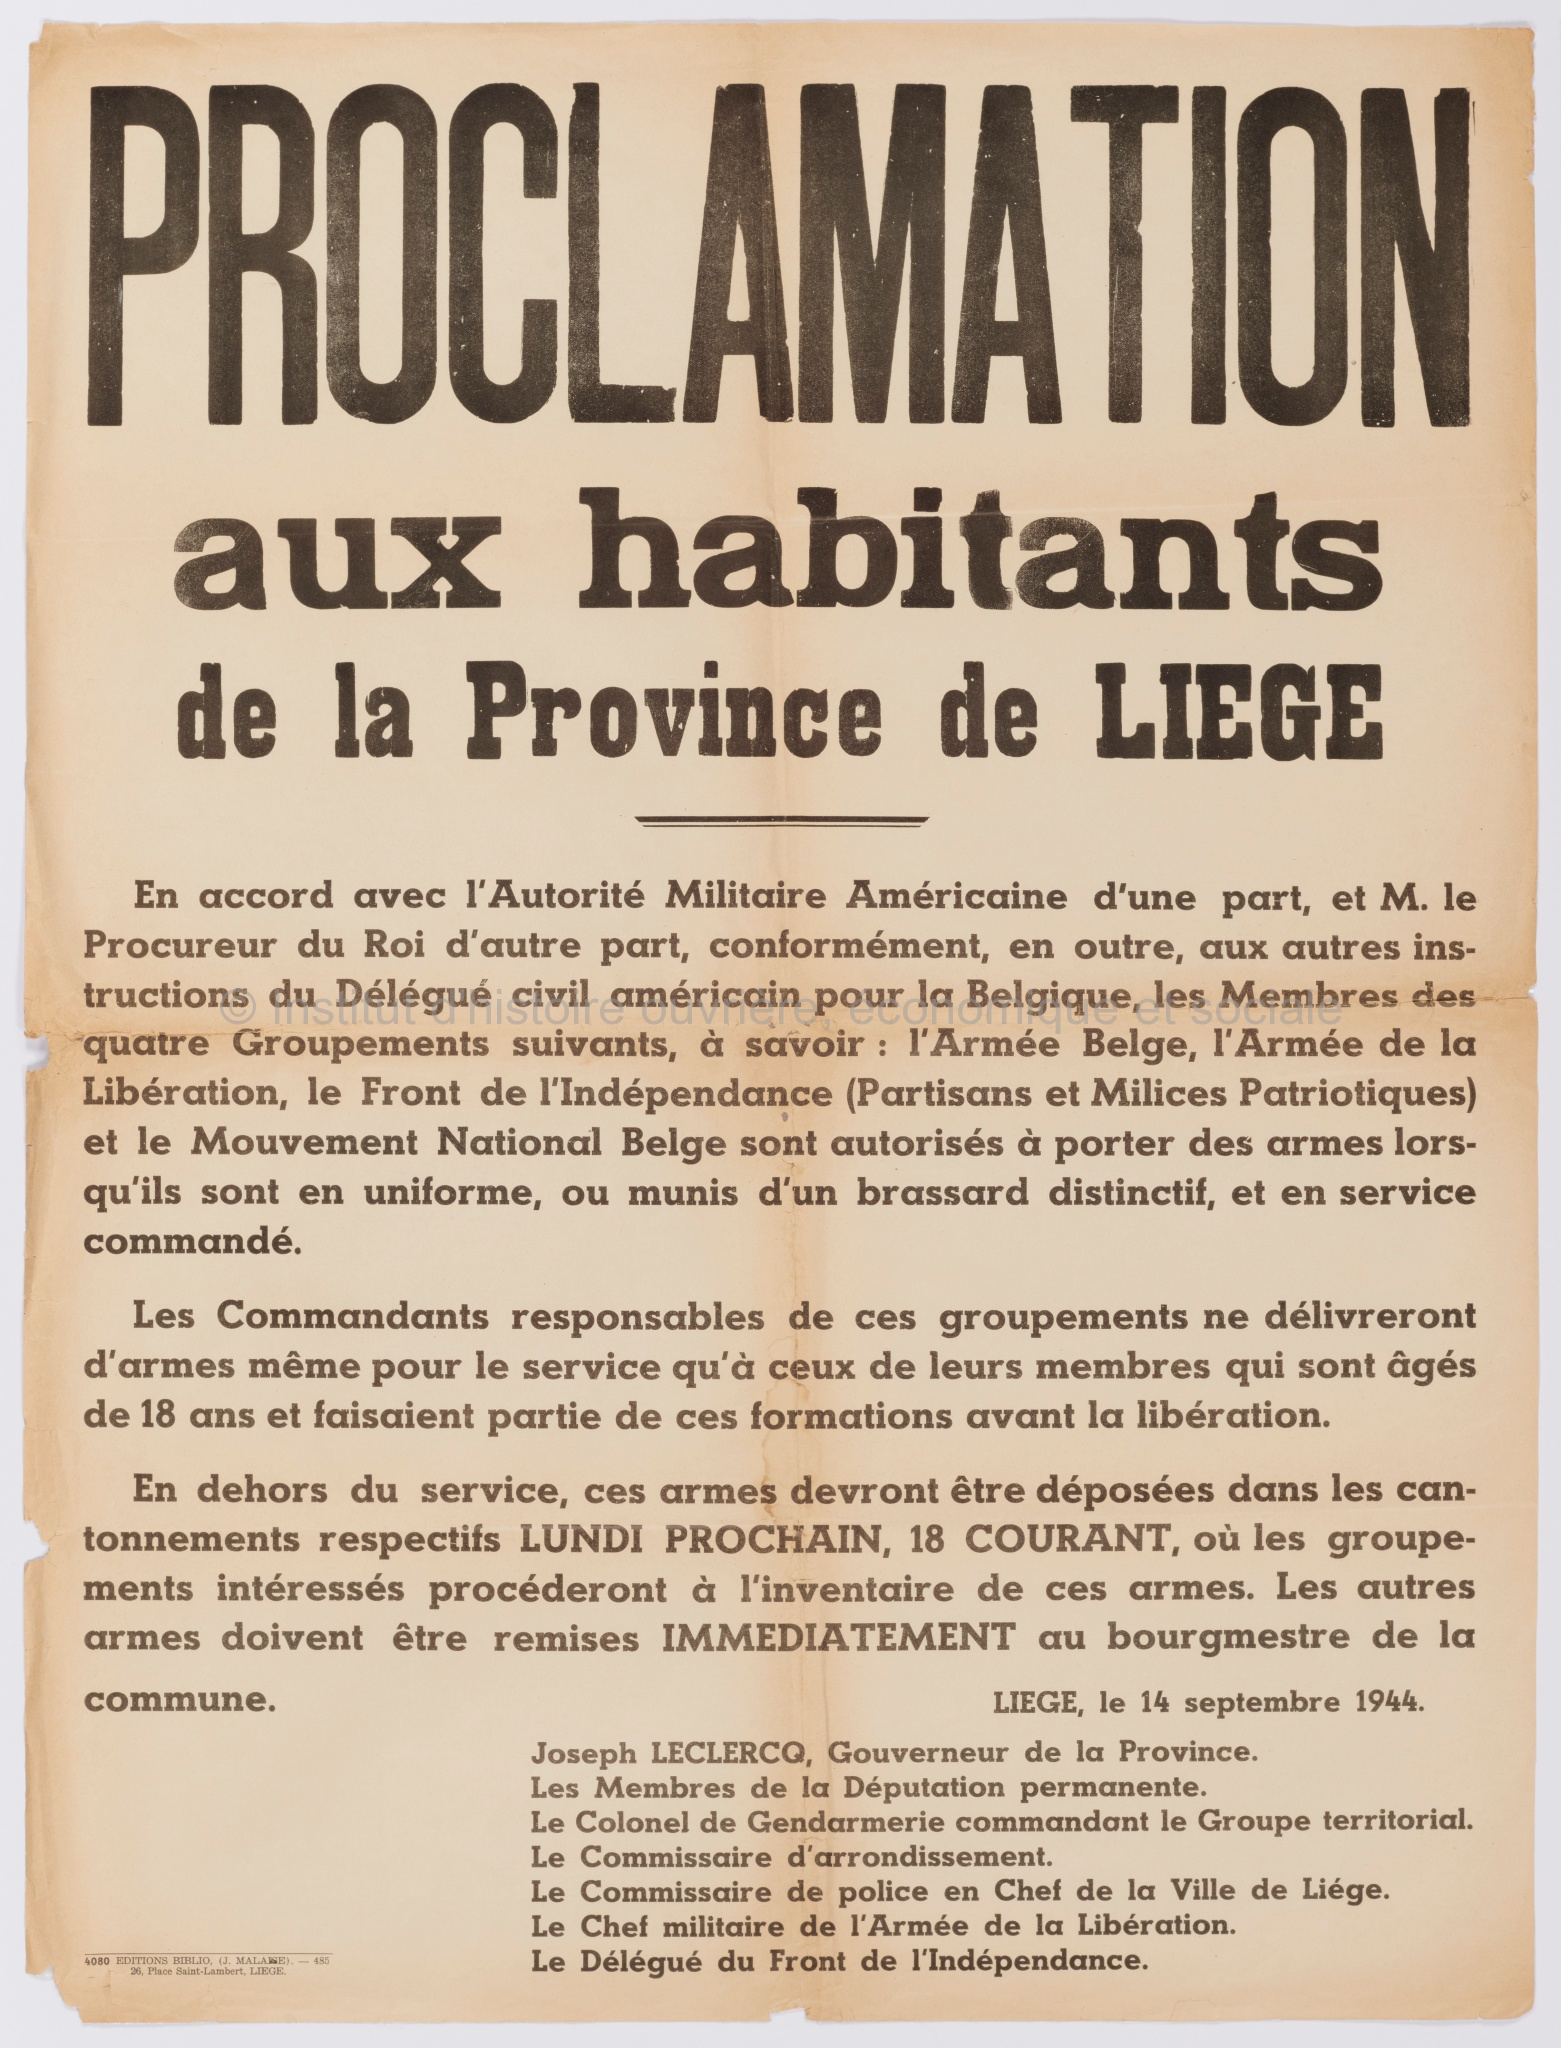 Proclamation aux habitants de la Province de Liège